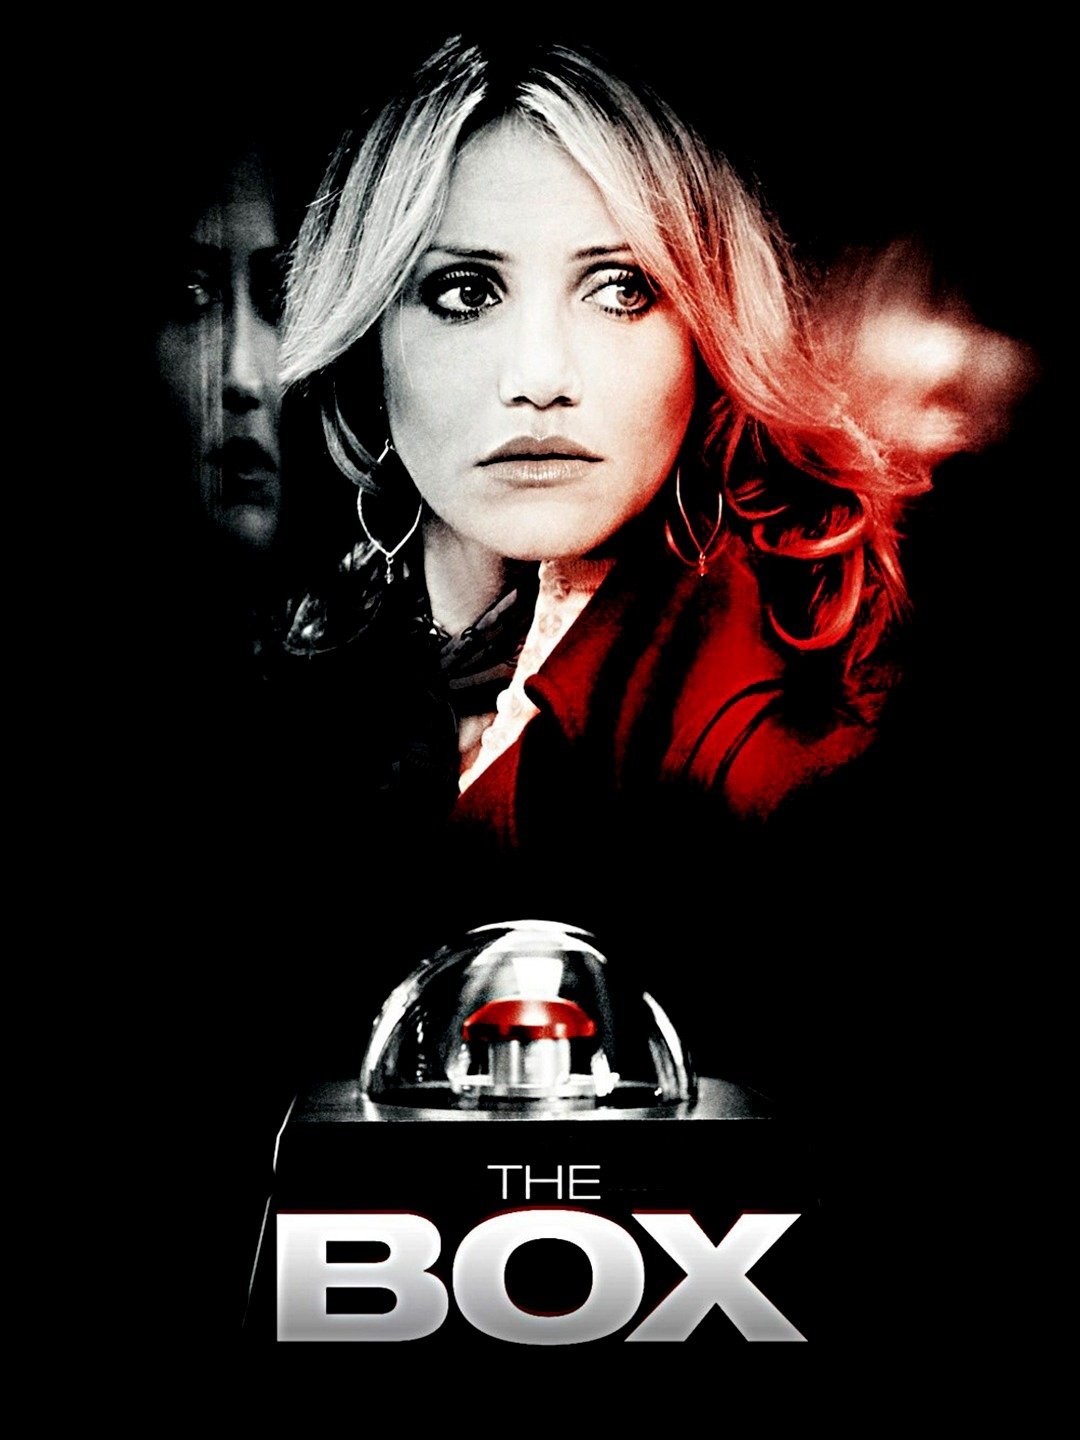 The Box (2009 film) - Wikipedia